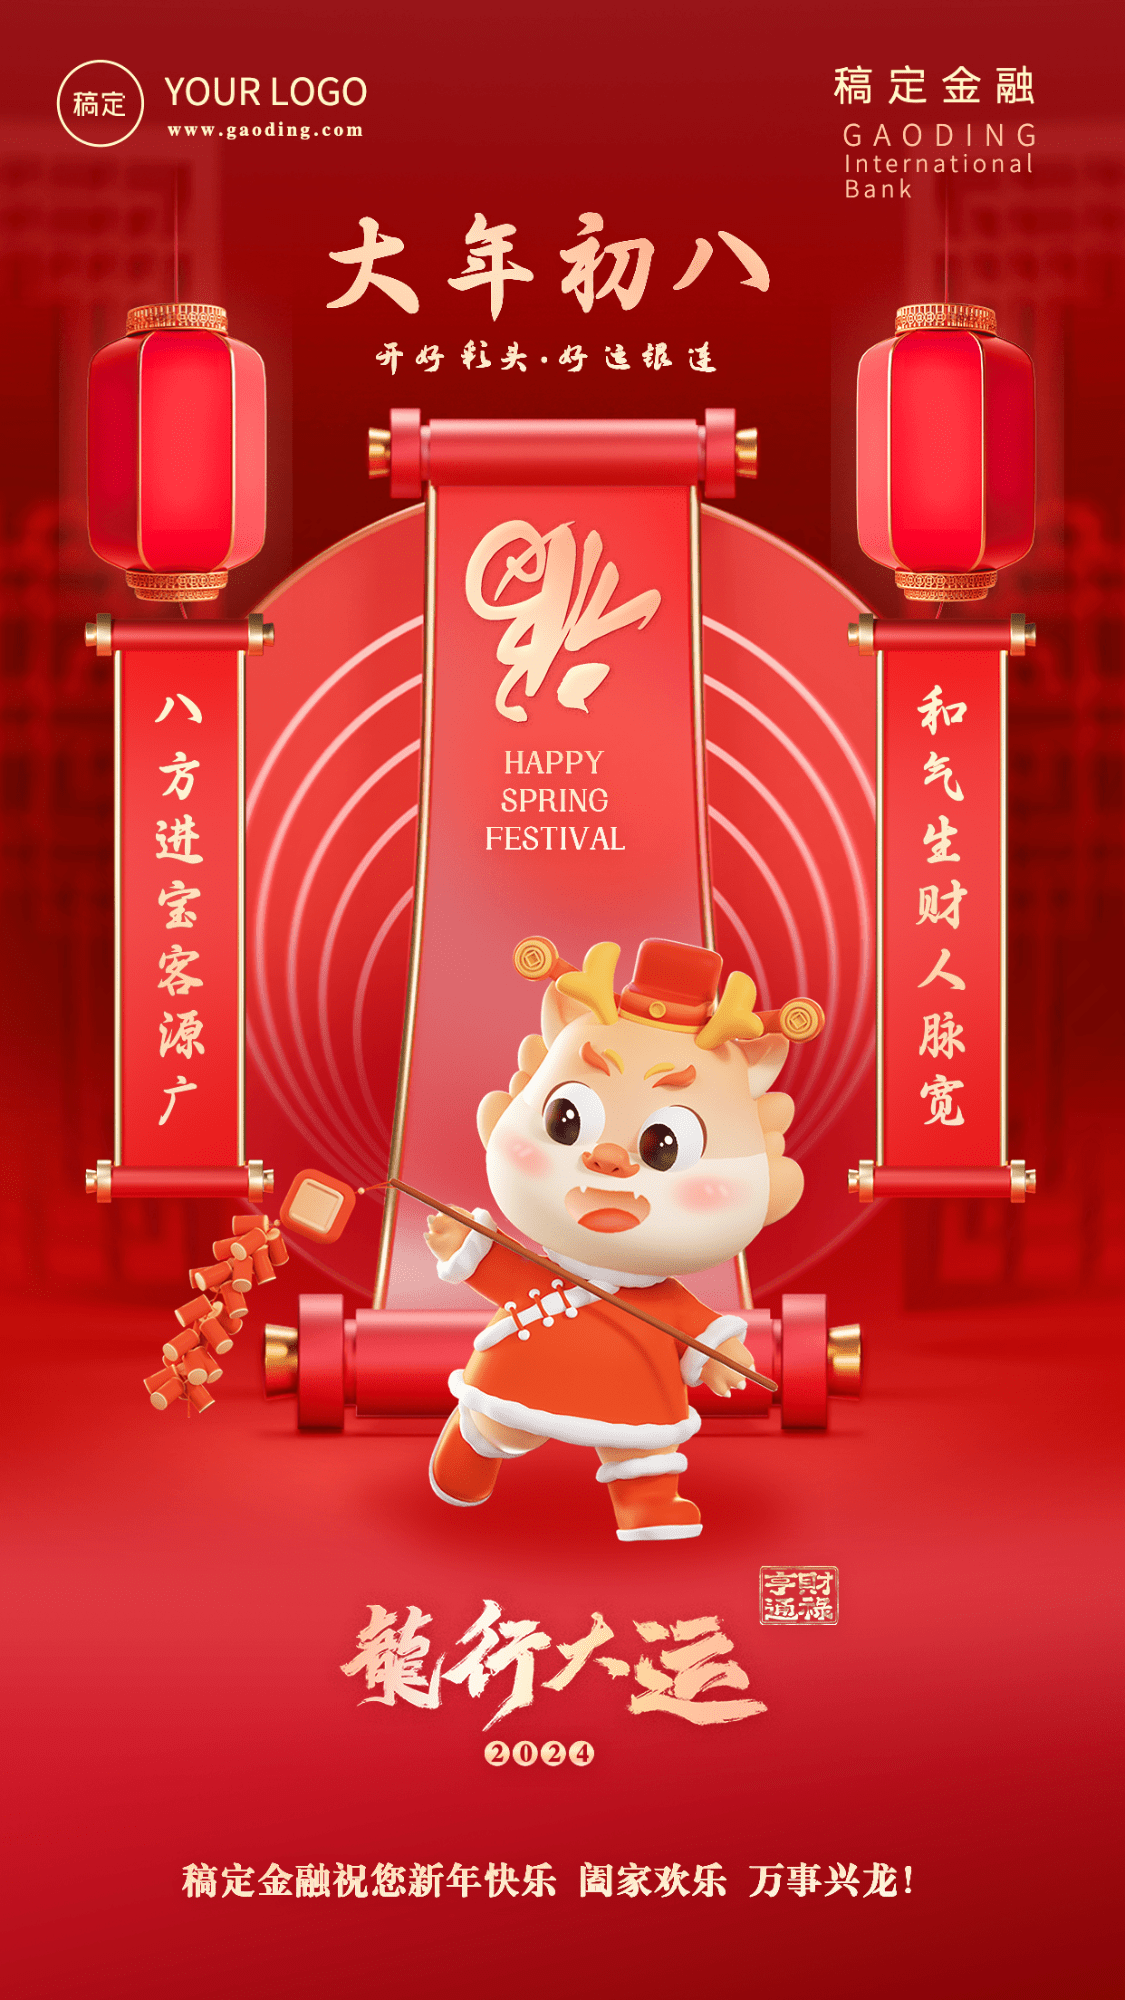 春节龙年正月初八金融保险节日祝福喜庆3D系列手机海报